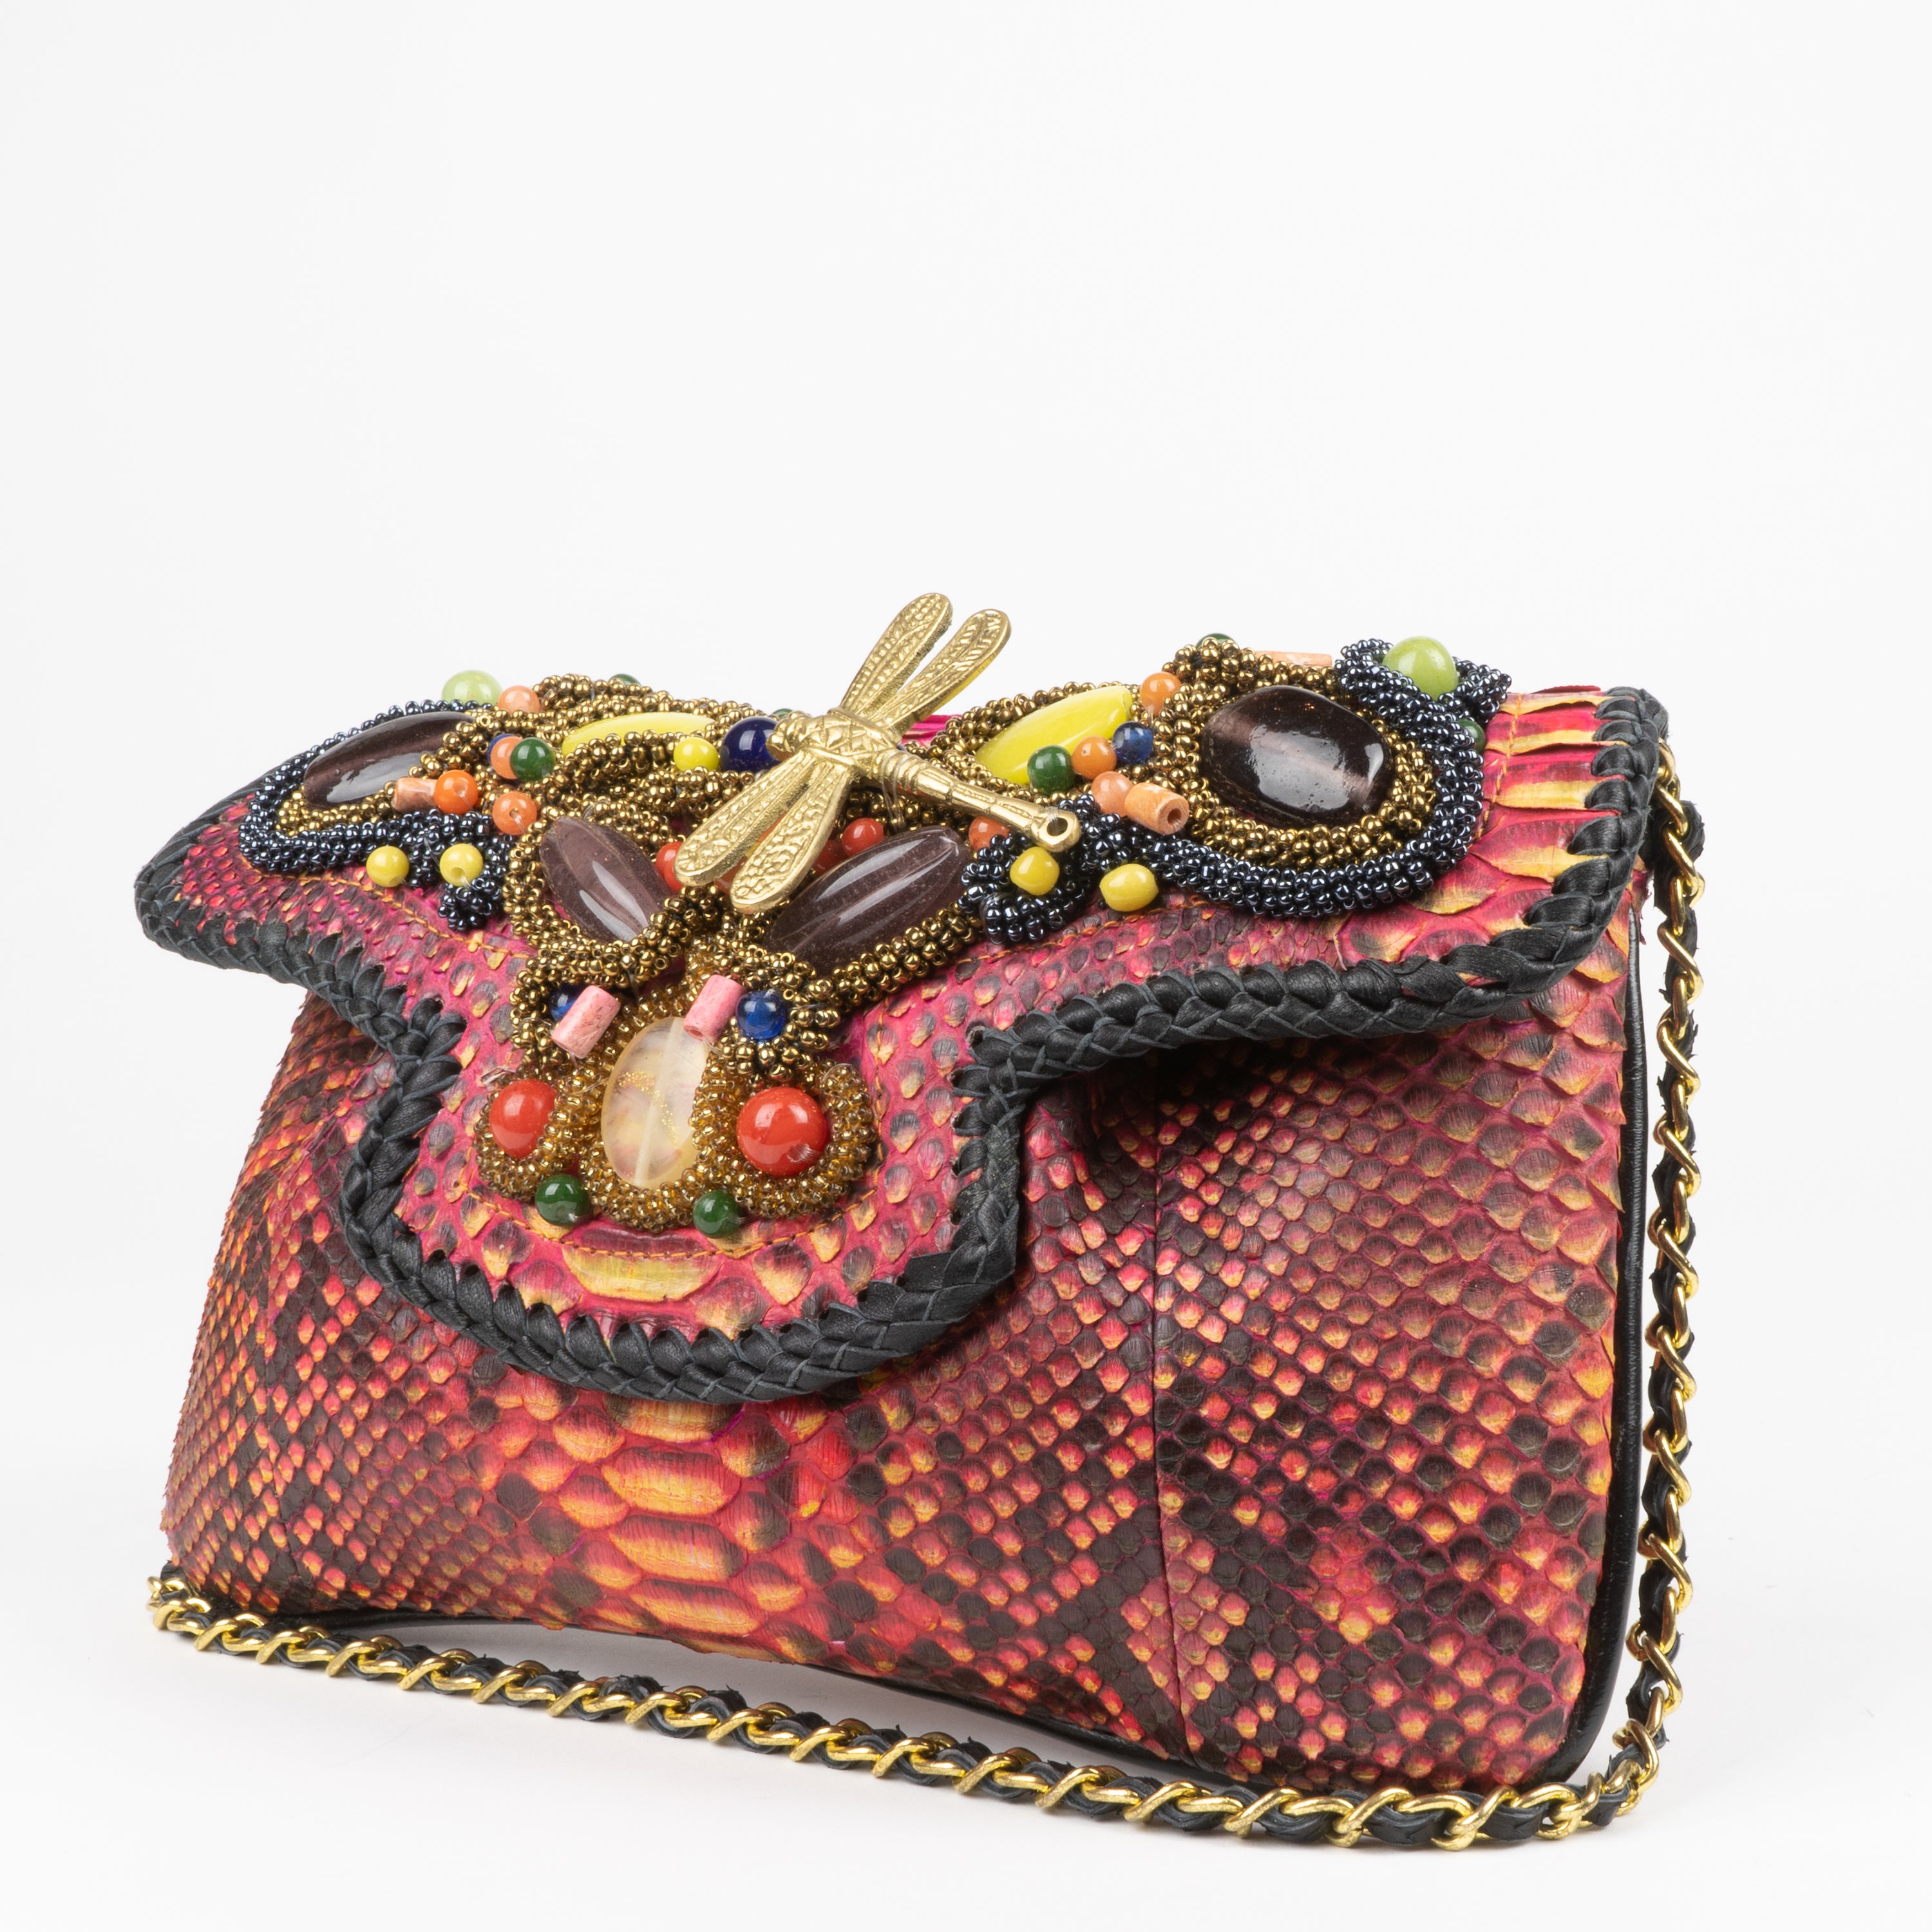 Snakeskin Shoulder Bag Brown Vintage Bags, Handbags & Cases for sale | eBay